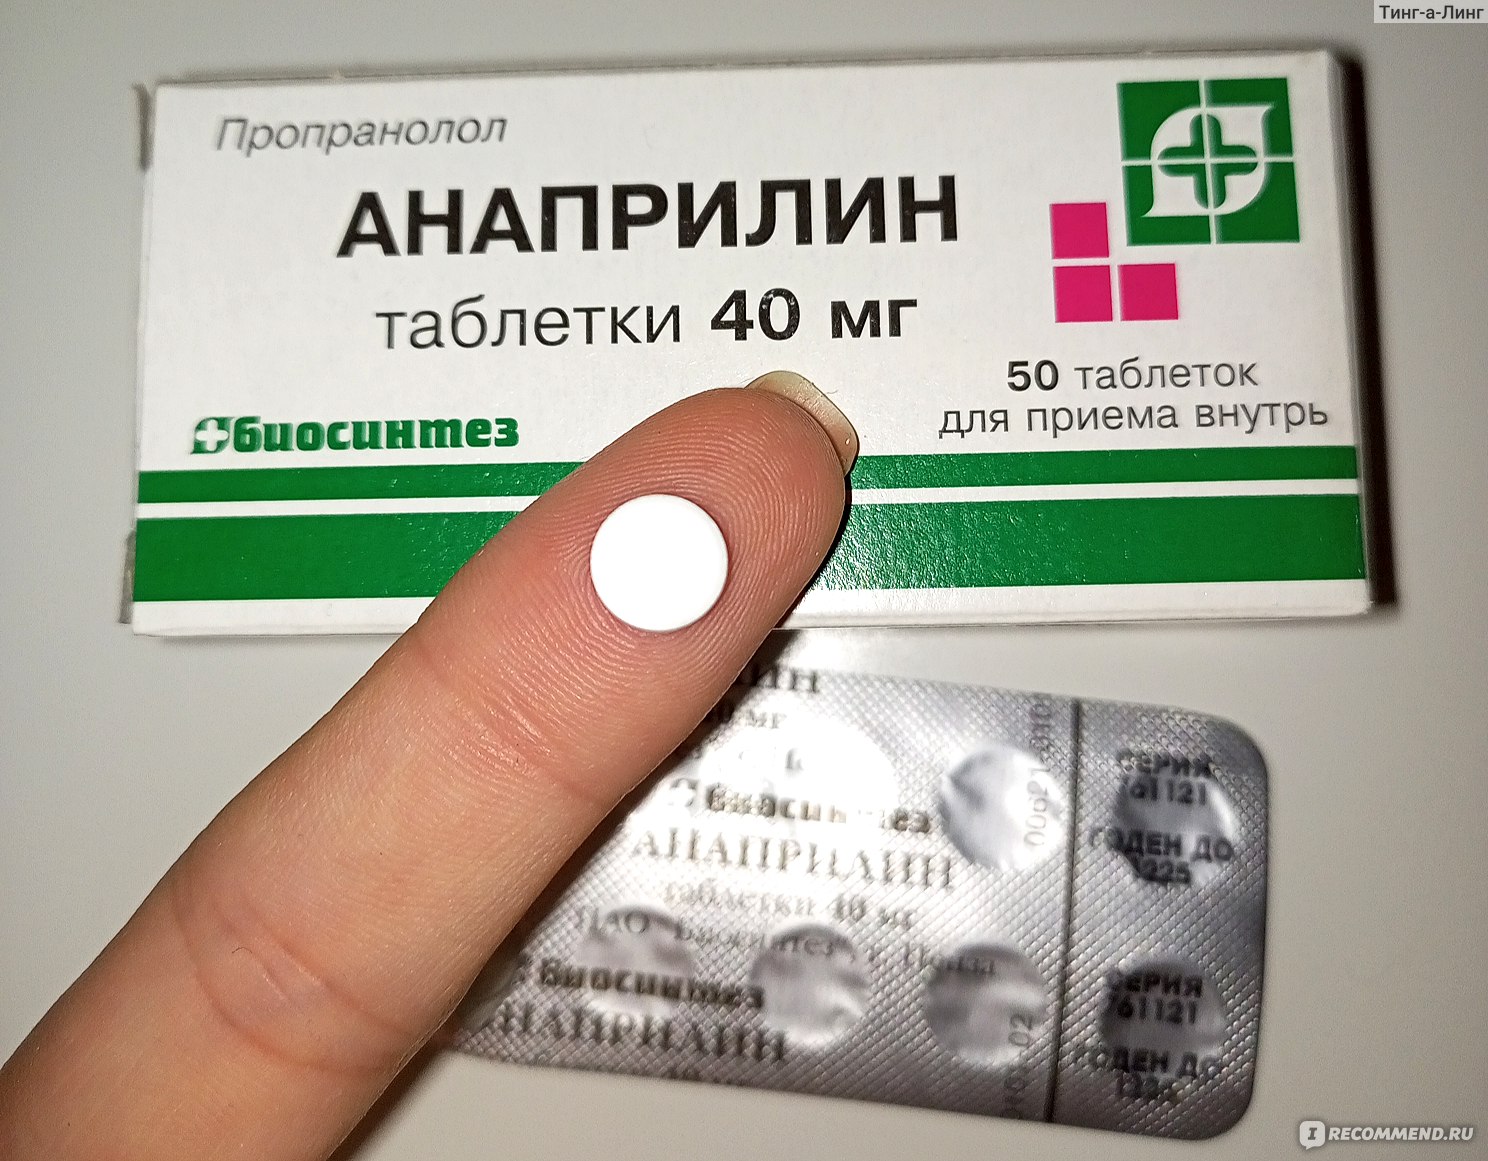 Анаприлин отзывы врачей. Анаприлин таблетки. Таблетки анаприлин для чего. Анаприлин и астма. Анаприлин это бета блокатор.